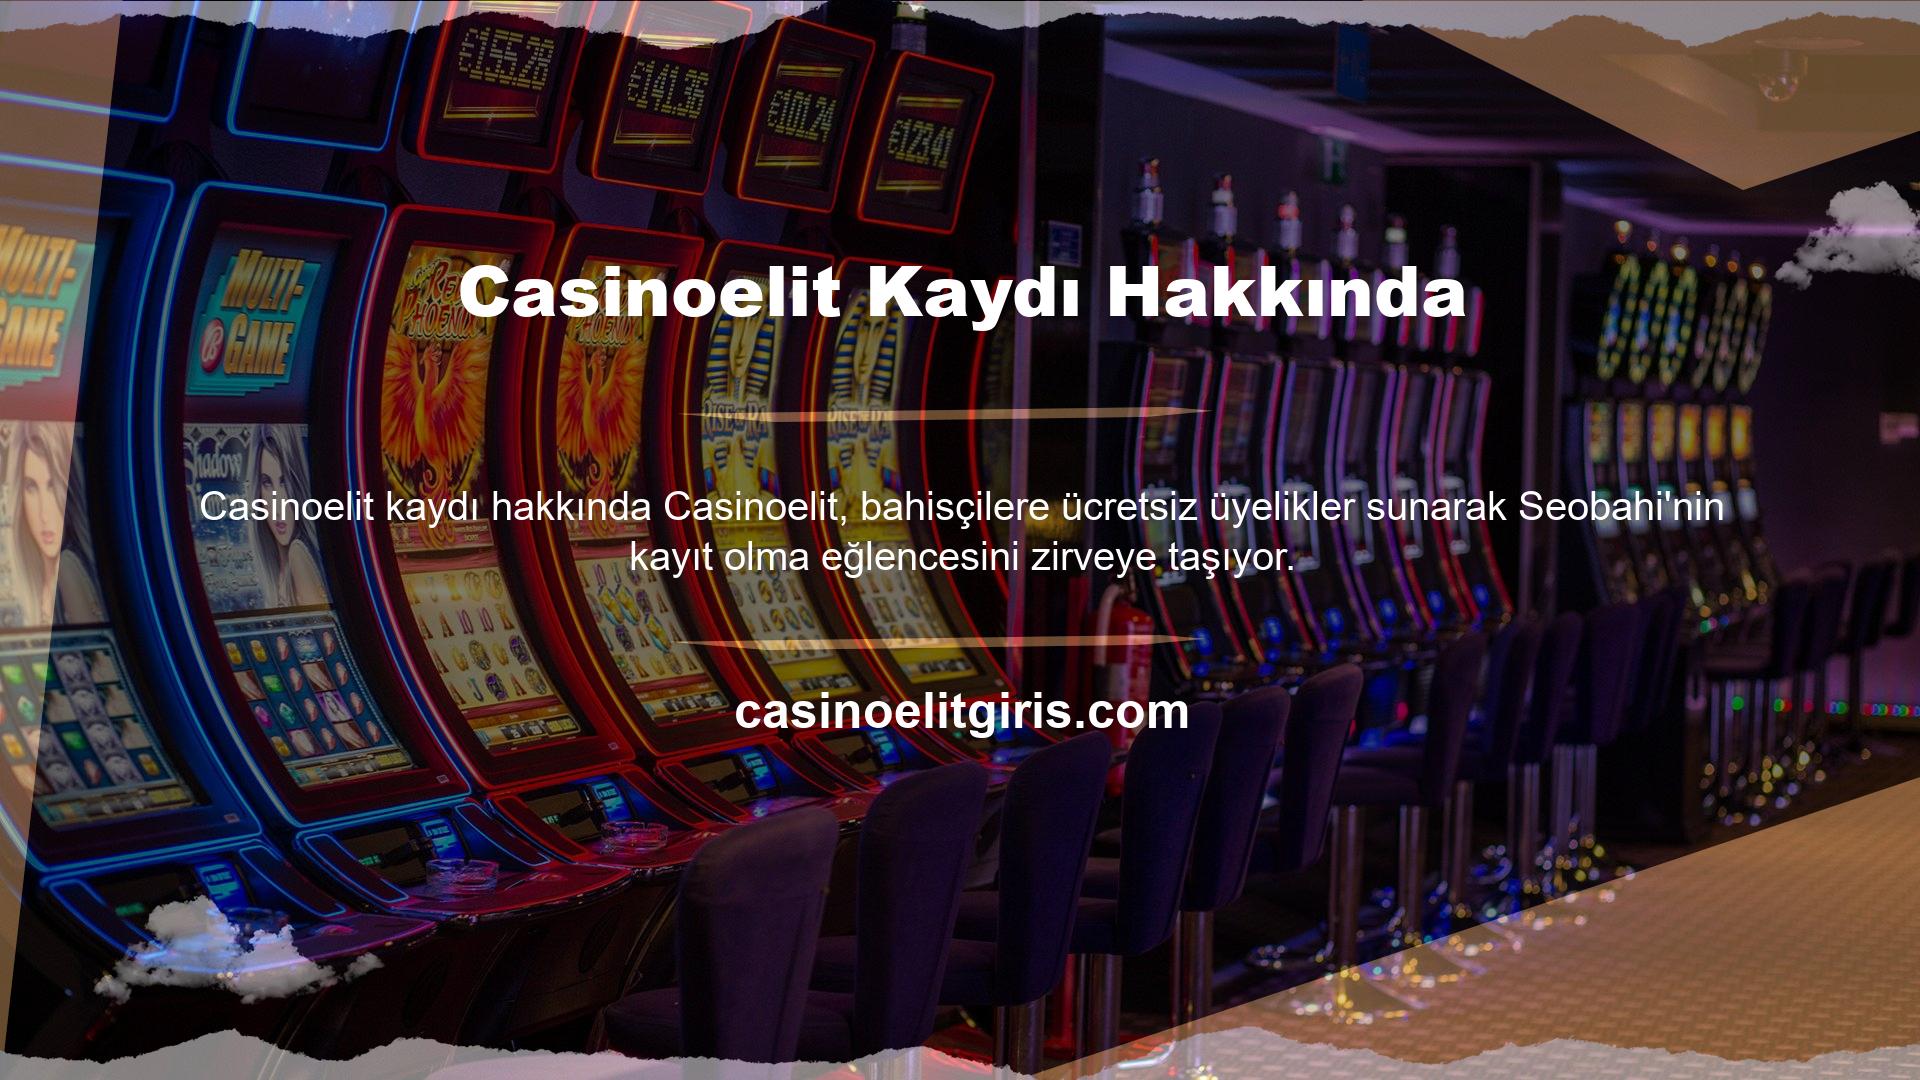 Spor bahisleri ve slot makine oyunlarından para kazanan bahisçiler, Casinoelit kayıt programını arkadaşlarına tavsiye etmektedir